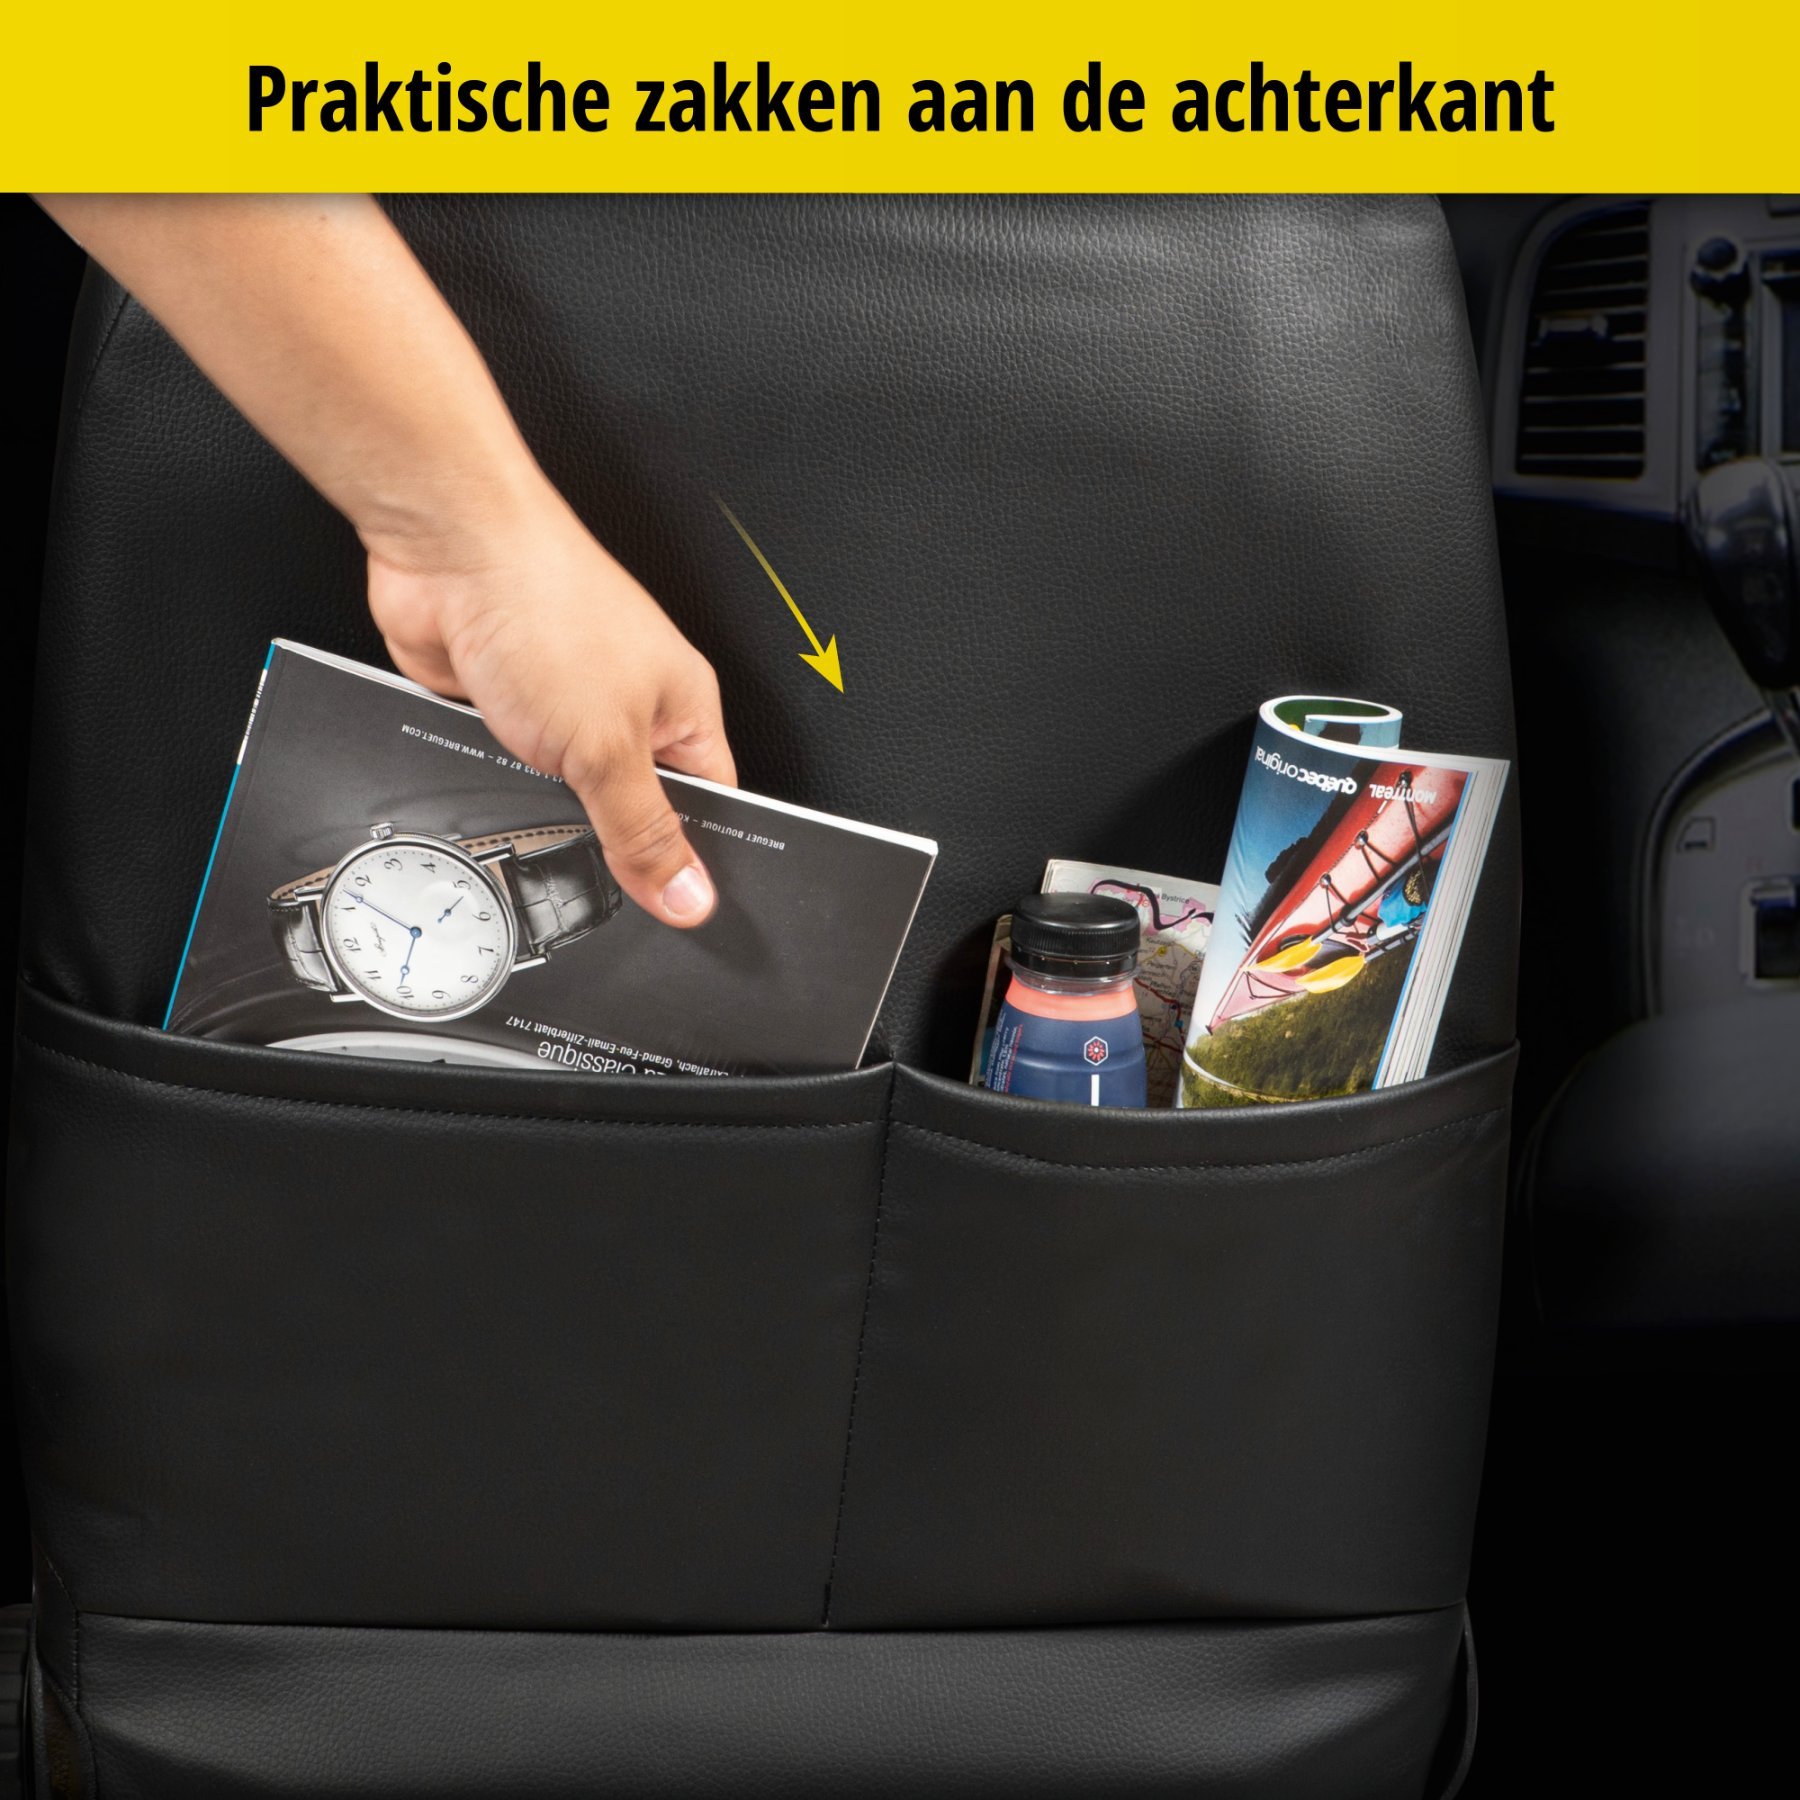 Auto stoelbekleding Bari geschikt voor VW Golf VII Comfortline 08/2012-Vandaag, 2 enkele zetelhoezen voor standard zetels